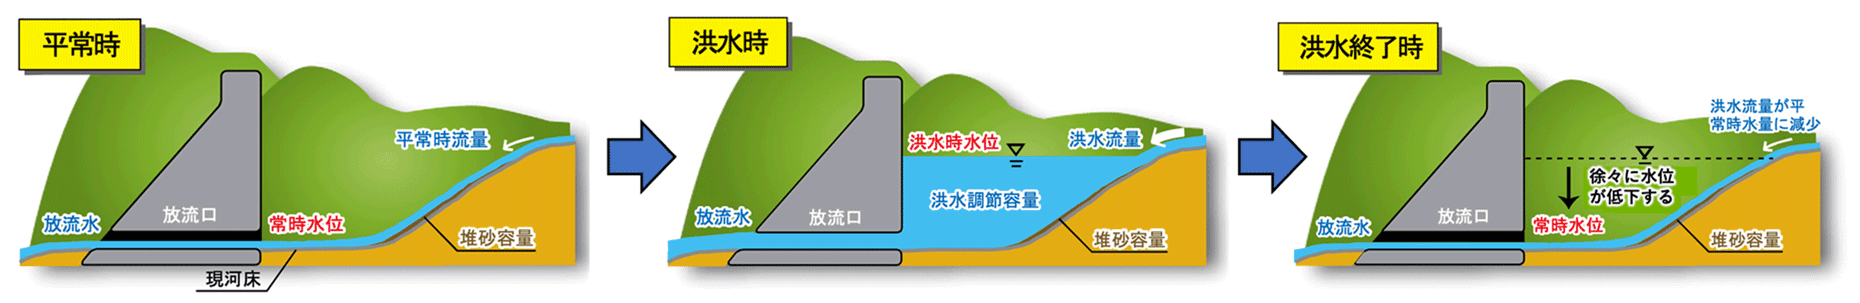 流水型ダムの洪水調節イメージ図